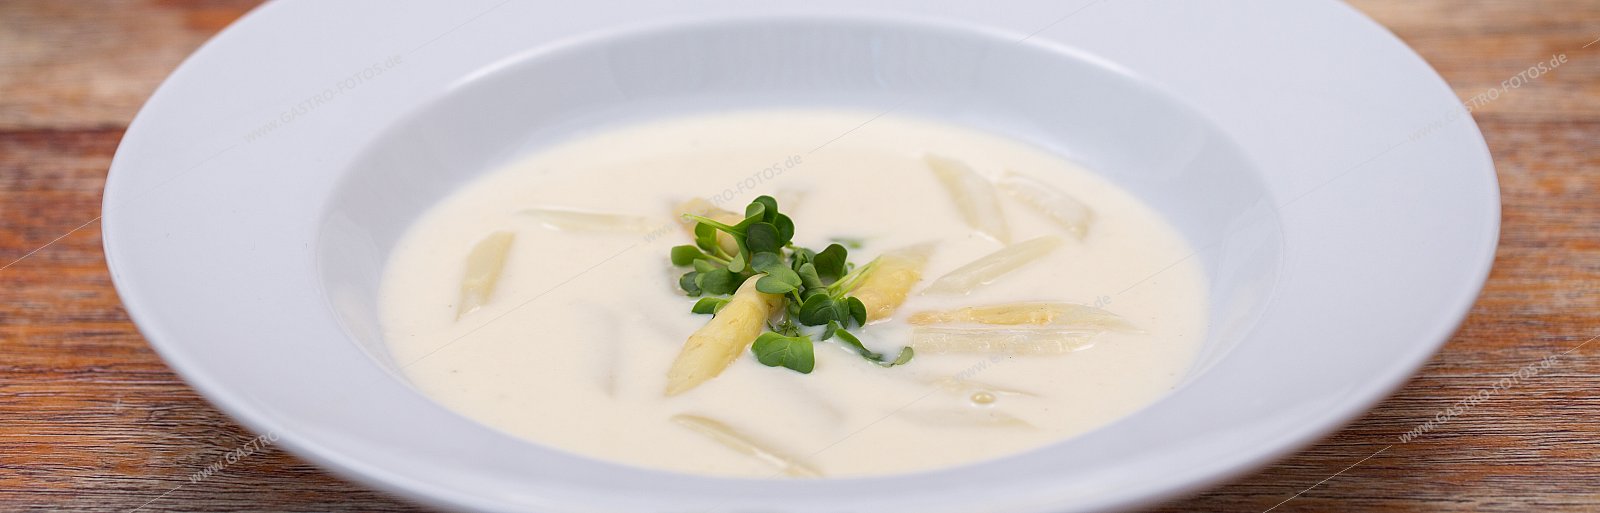 Spargelcremesuppe - Suppen & Eintöpfe mit Gemüseeinlage